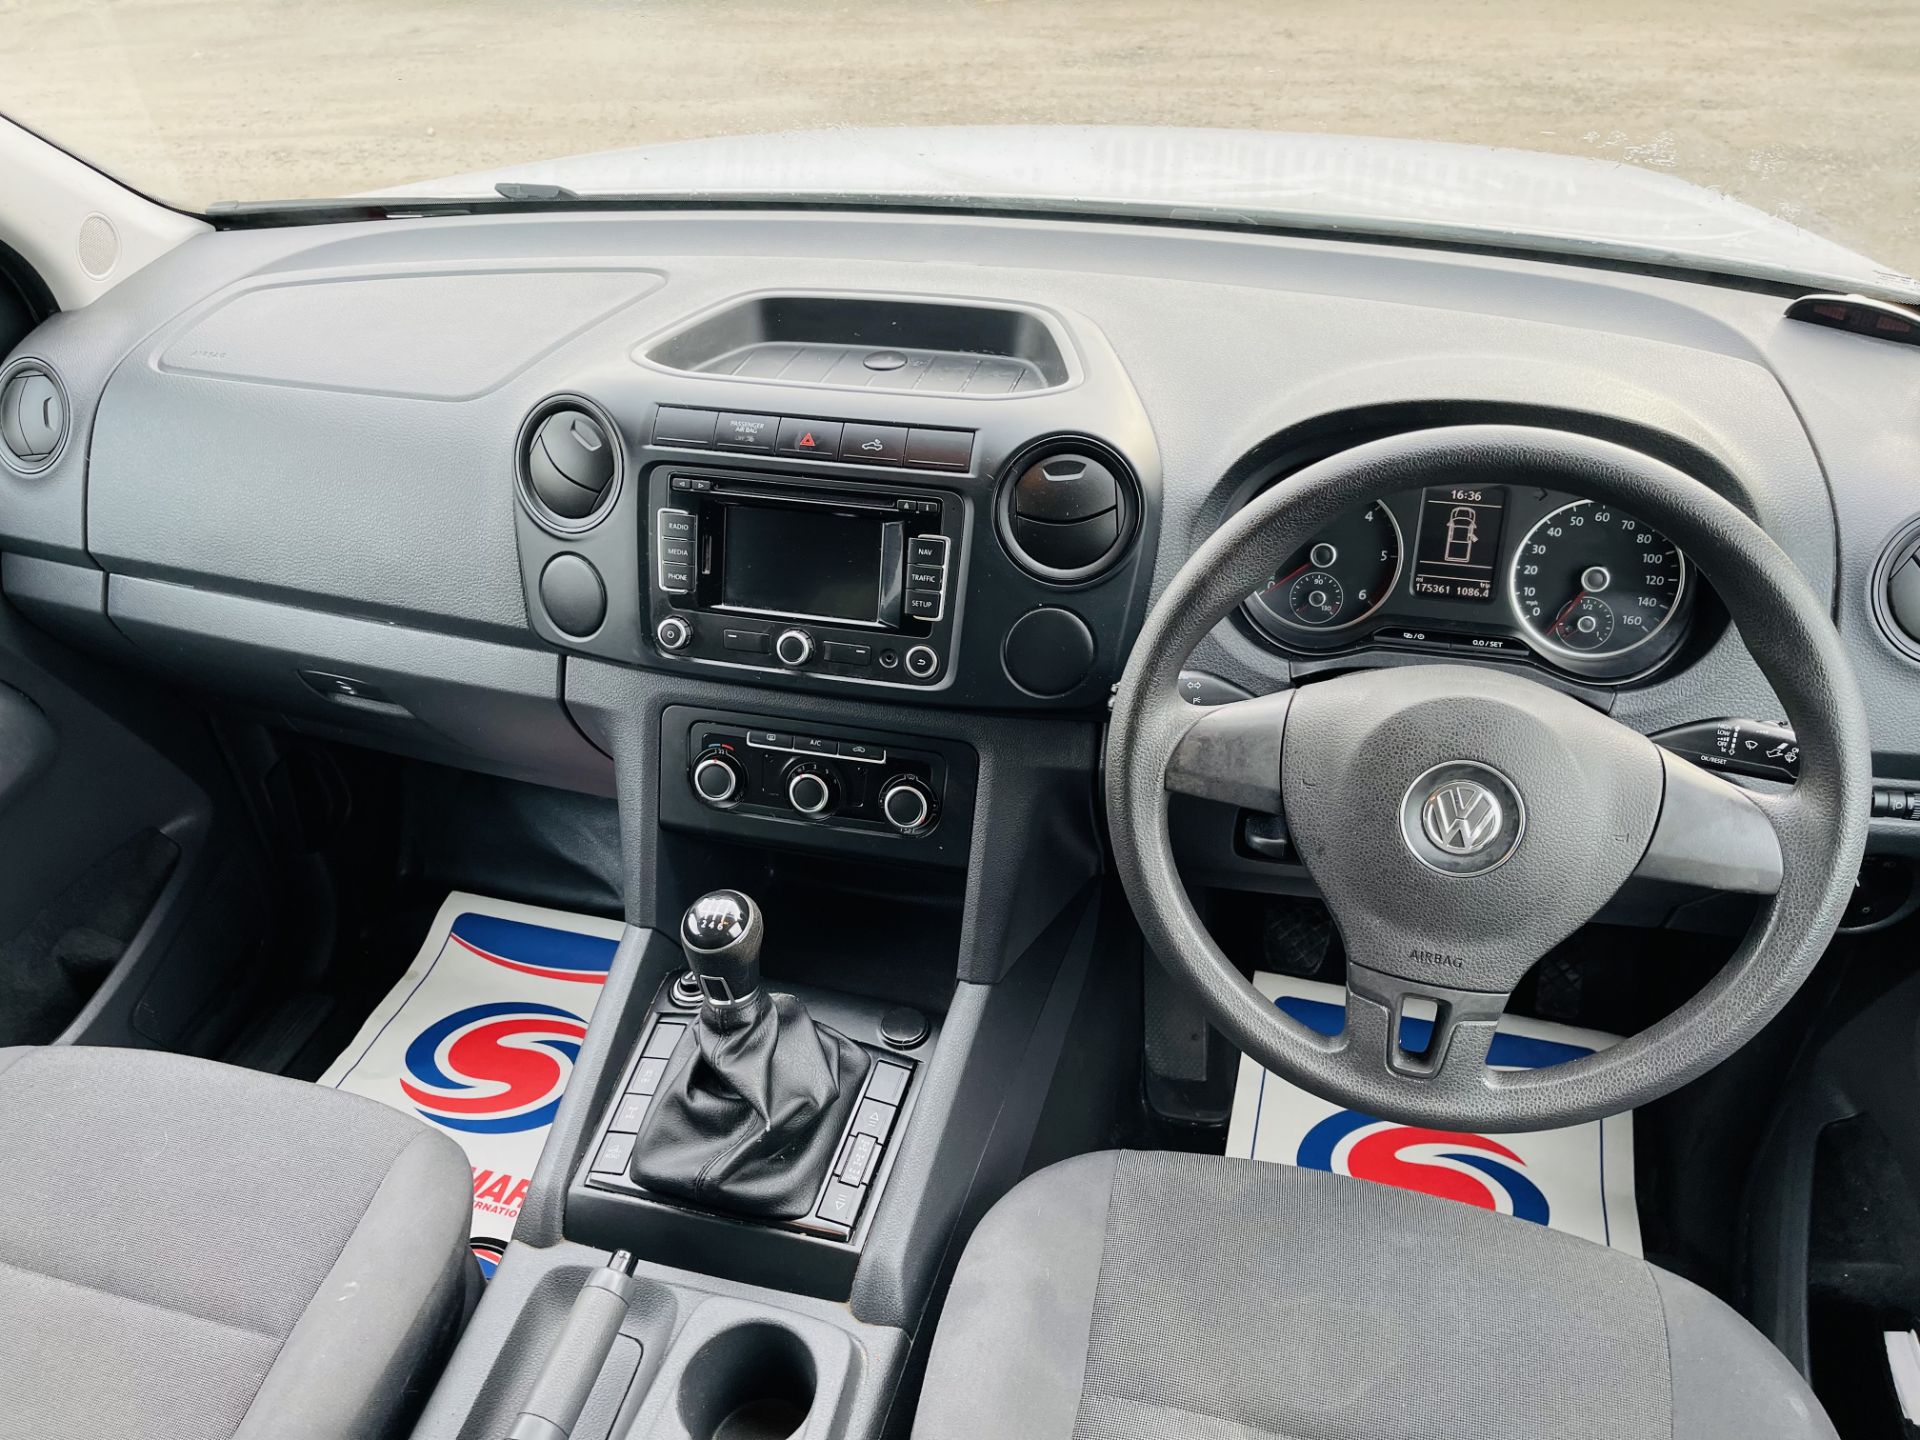 ** ON SALE ** Volkswagen Amarok Startline 2.0 TDI 4motion 4X4 2015 '15 Reg' - Sat Nav - A/C - No Vat - Image 18 of 25